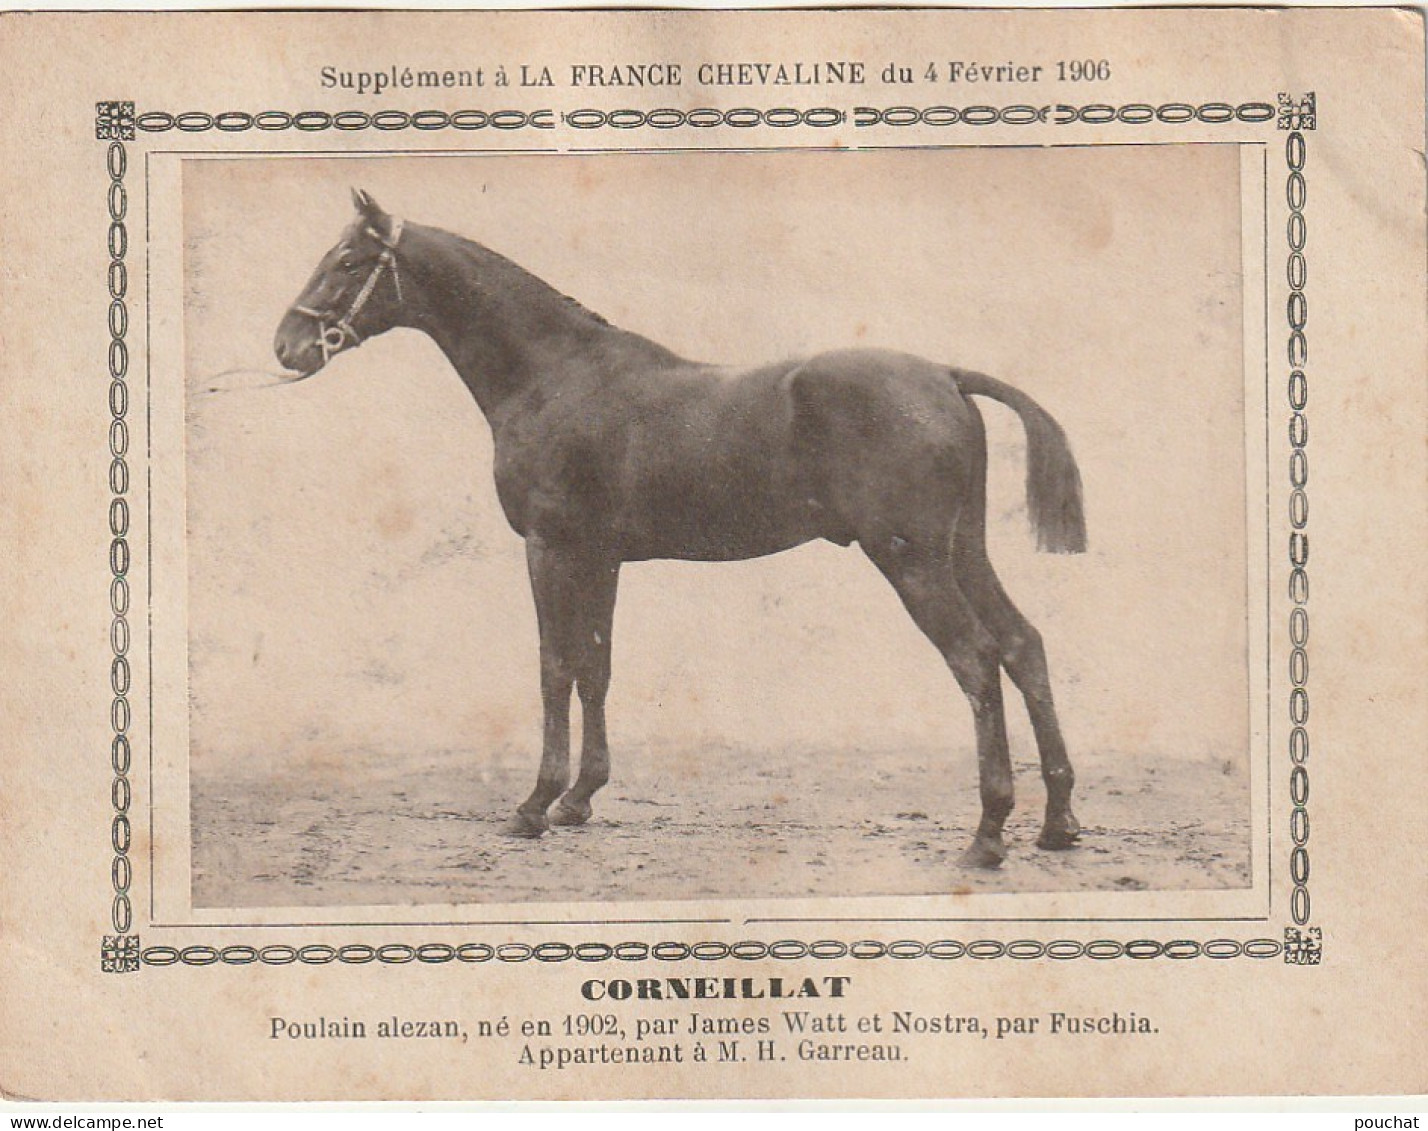 AA+ - " CORNEILLAT " - POULAIN ALEZAN  APPARTENANT A M. H. GARREAU - SUPPL. FRANCE CHEVALINE  FEVRIER 1906 - Horse Show